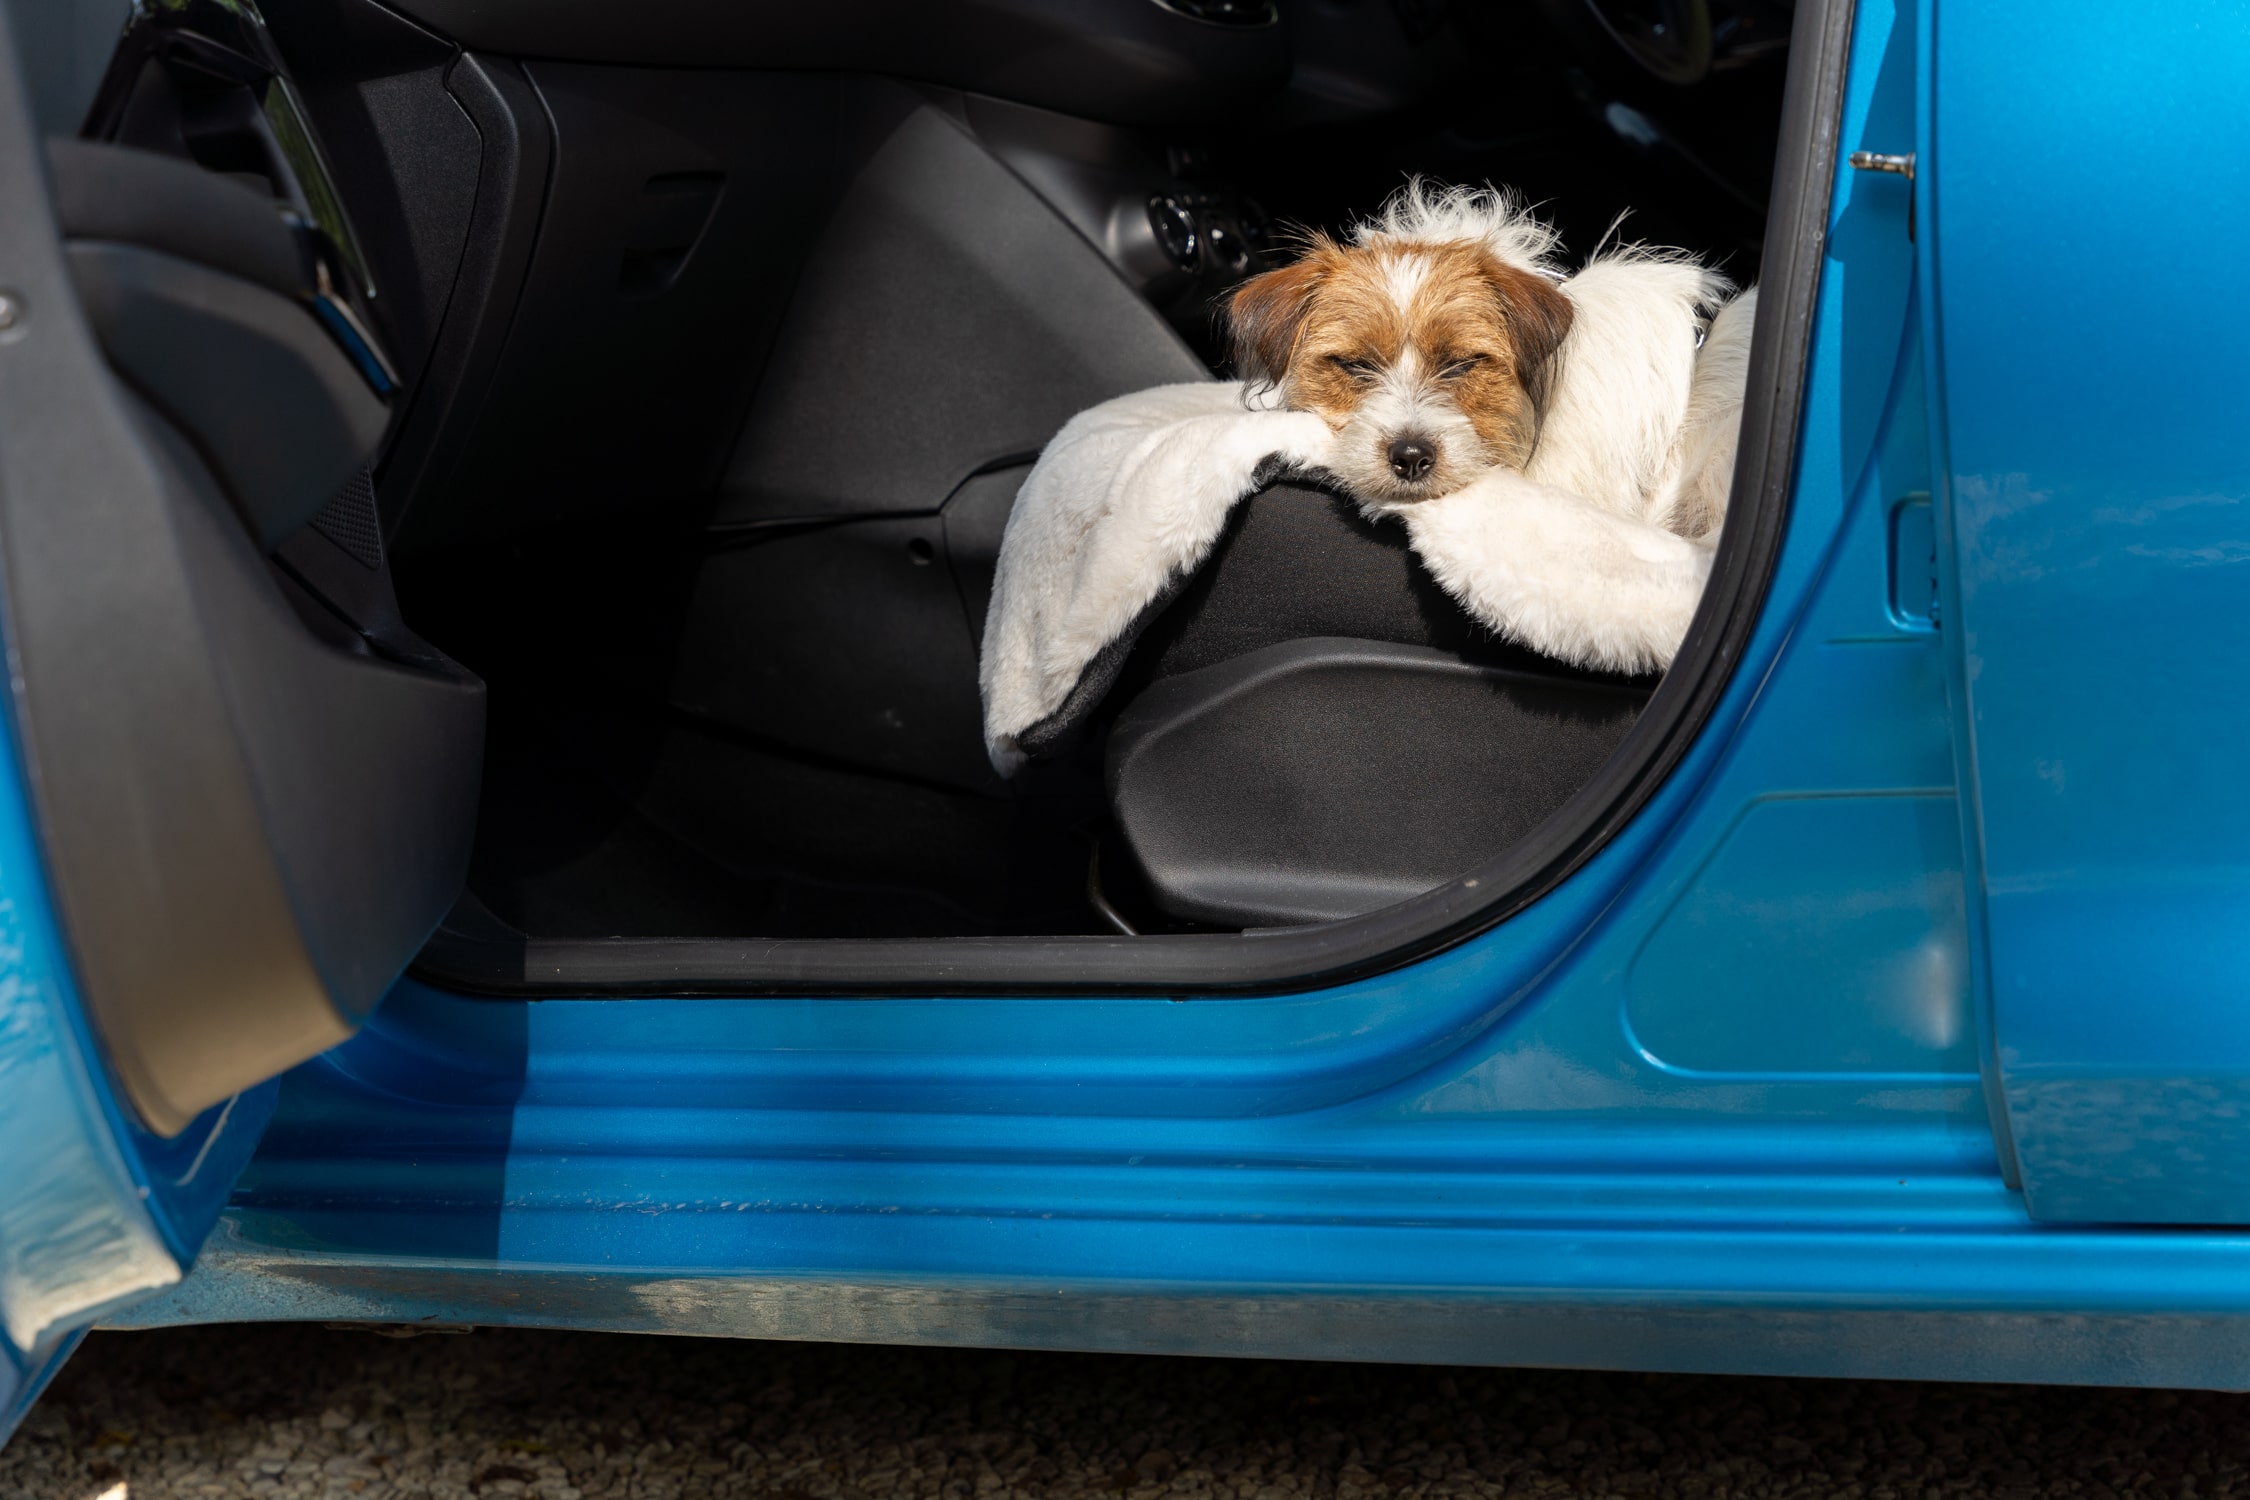 Transport chien voiture, tous les accessoires obli